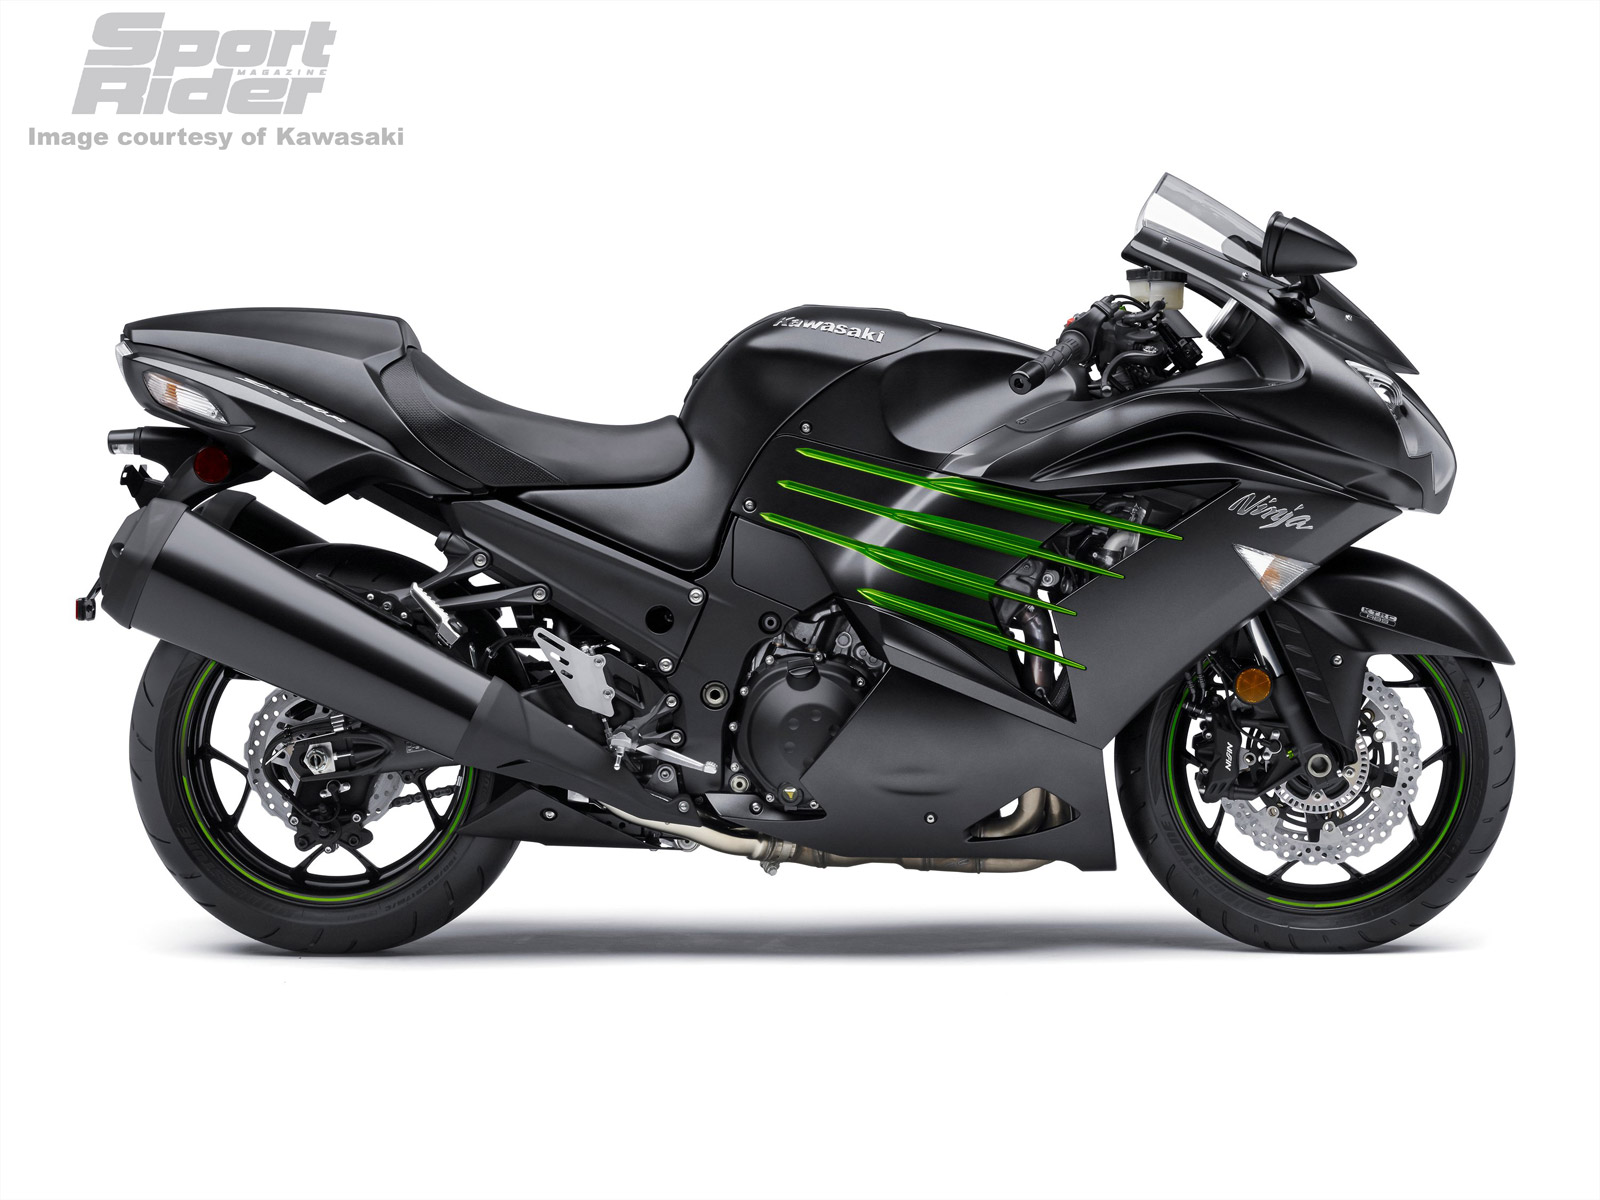 Kawasaki Announces More 2015 Models | Cycle World